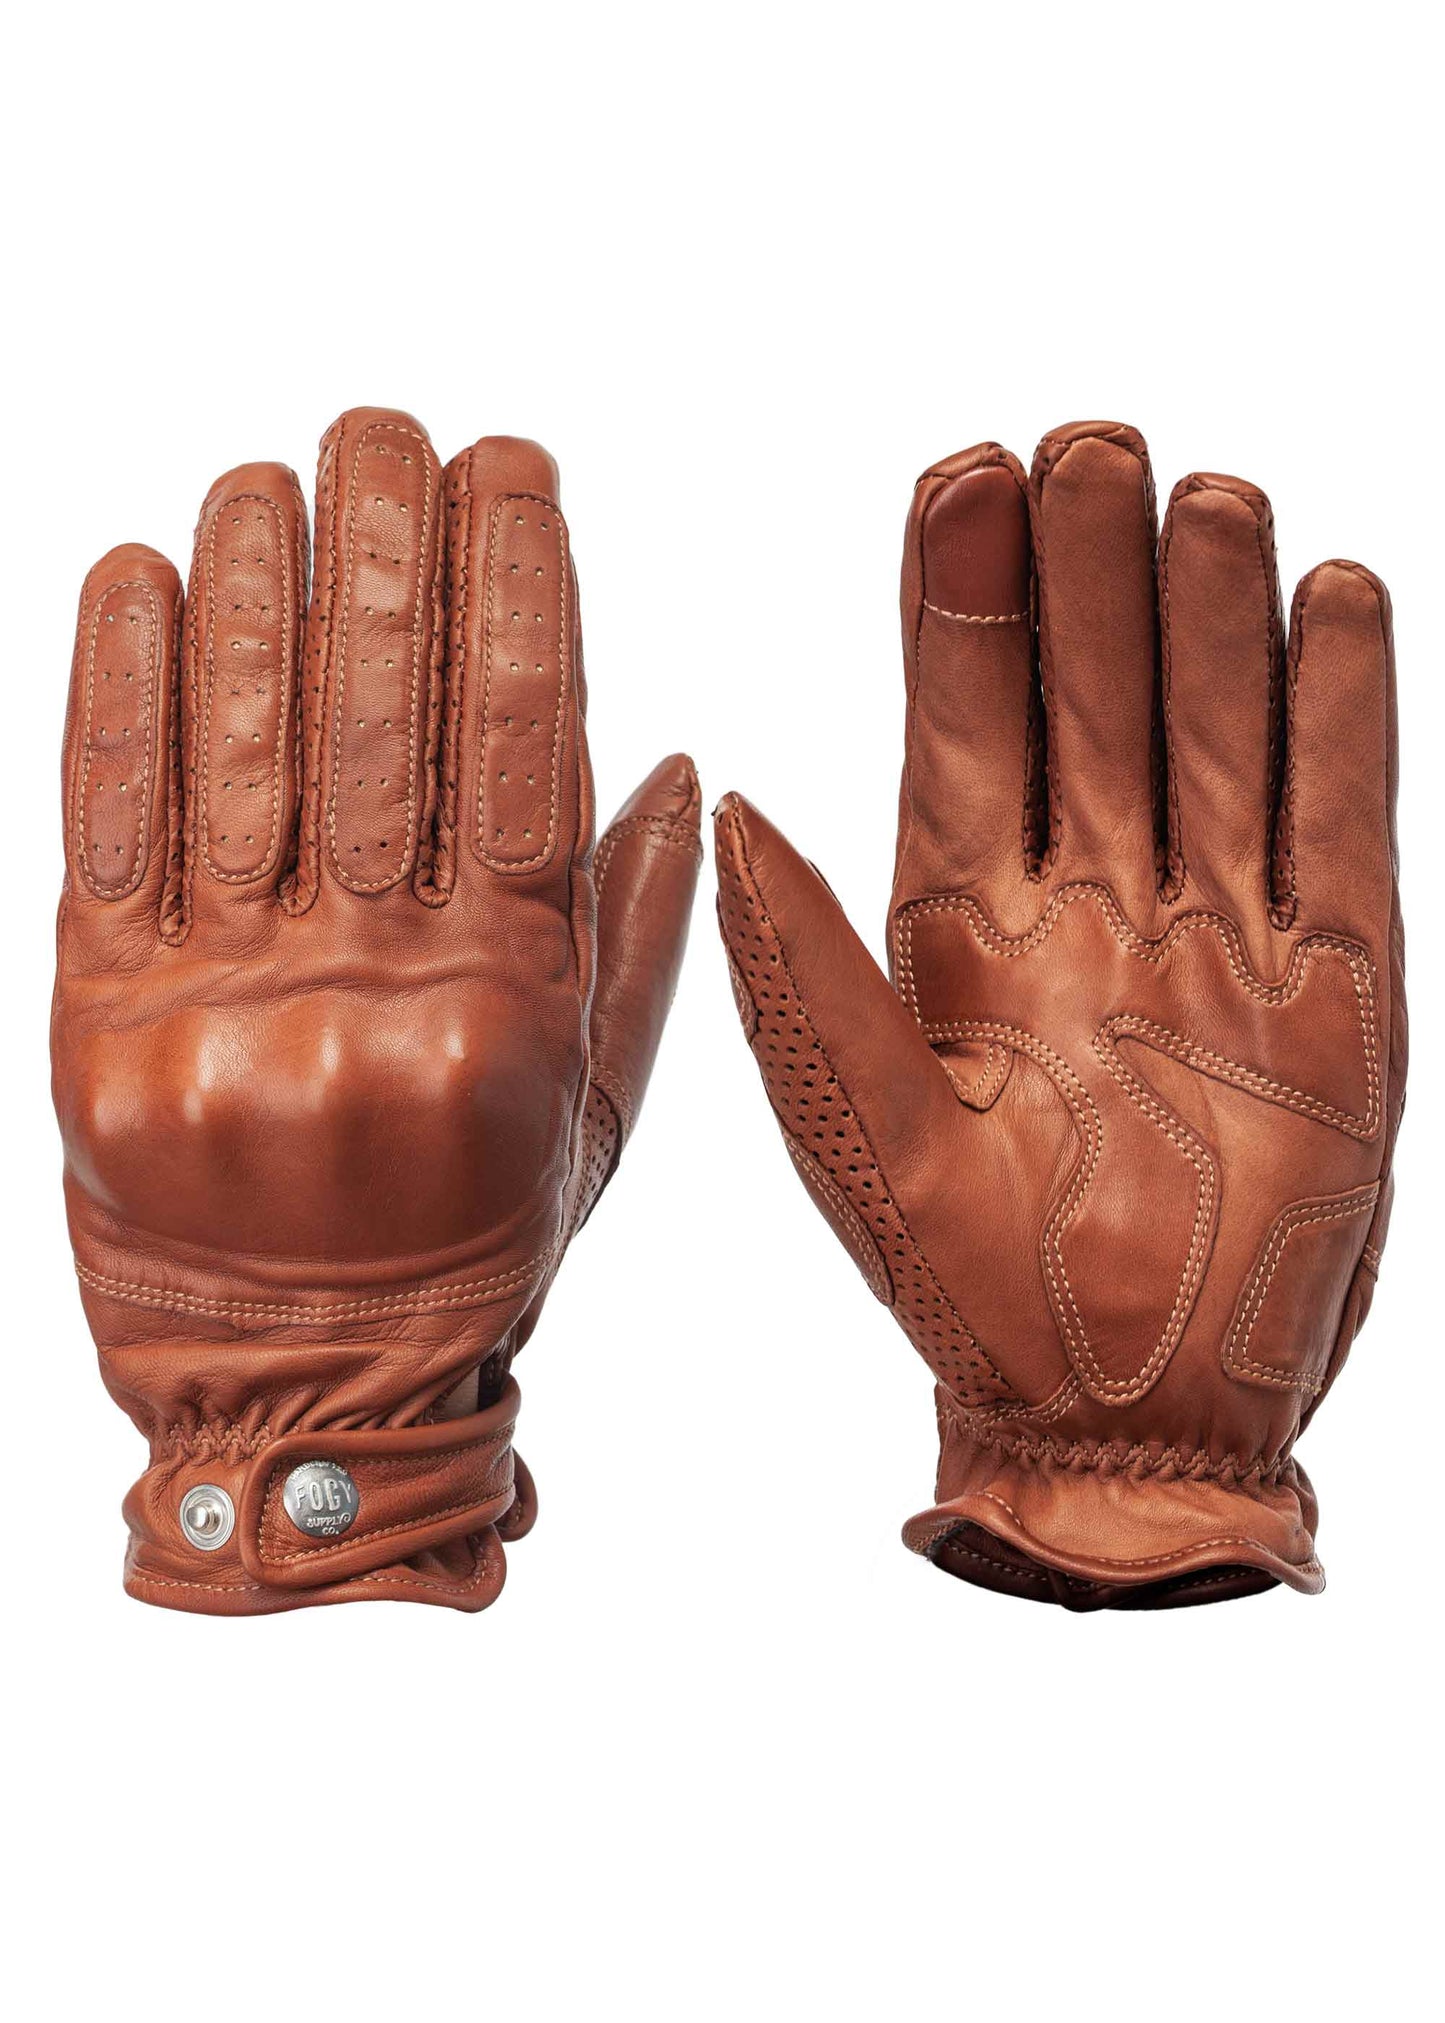 ETHIOPIA RASDASHEN Gloves - Armor/Brown